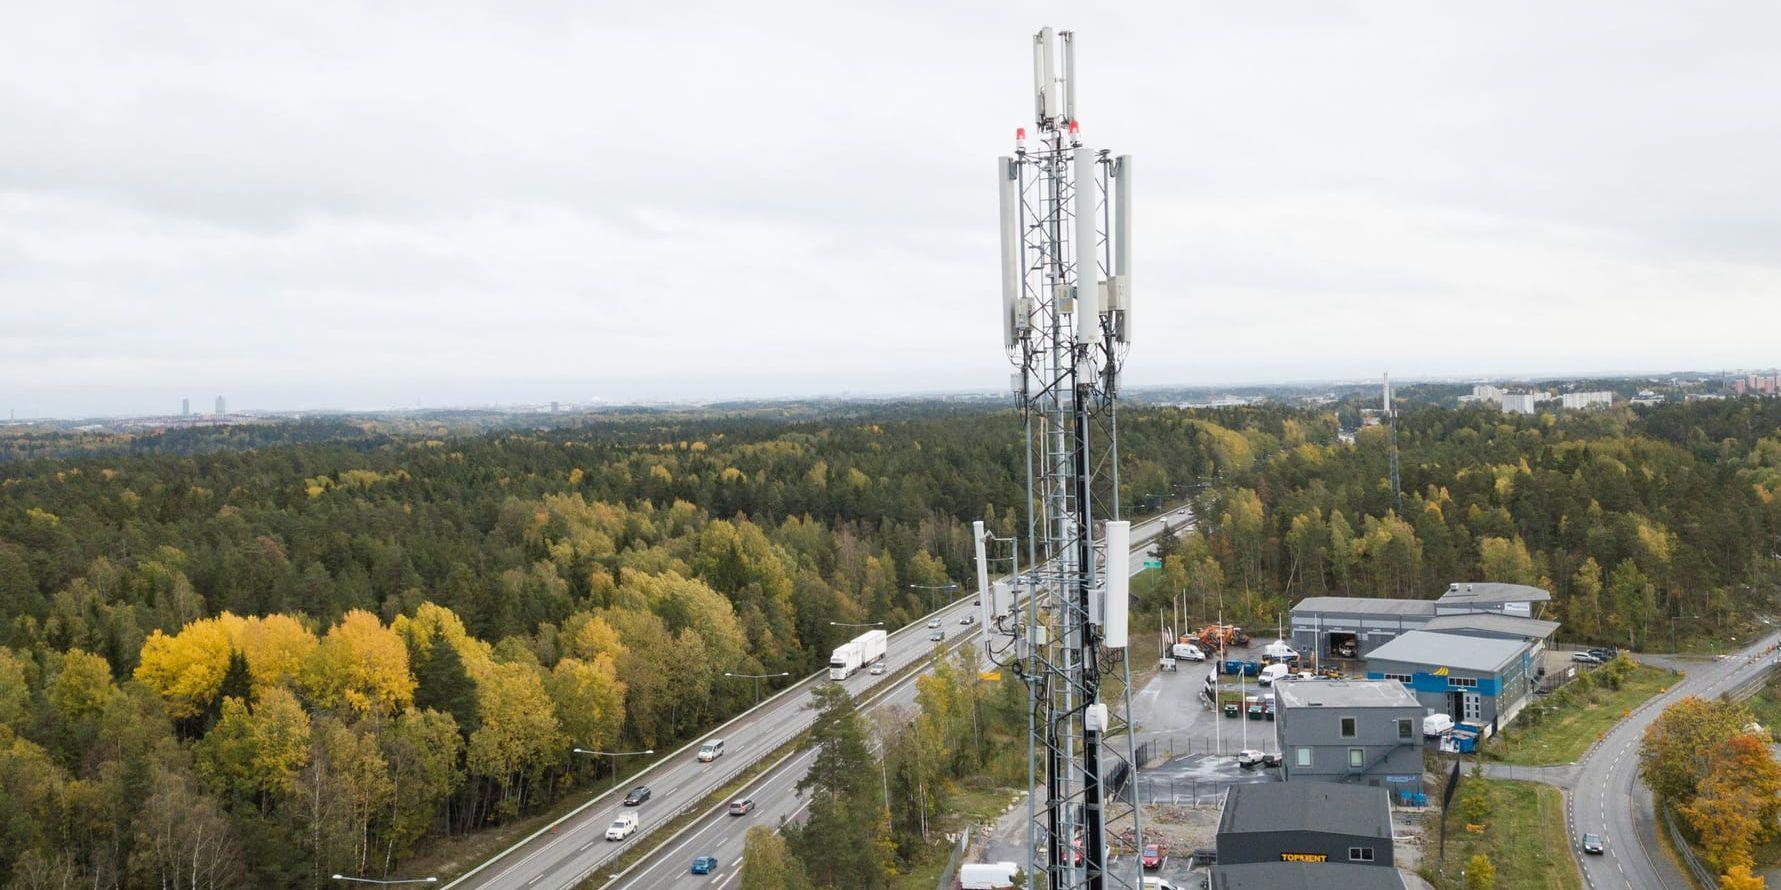 Tilldelningen av 700 MHz-bandet ses som en viktig åtgärd för att uppfylla regeringens bredbandsmål och förbättra täckningen på bland annat glesbygden. Arkivbild.